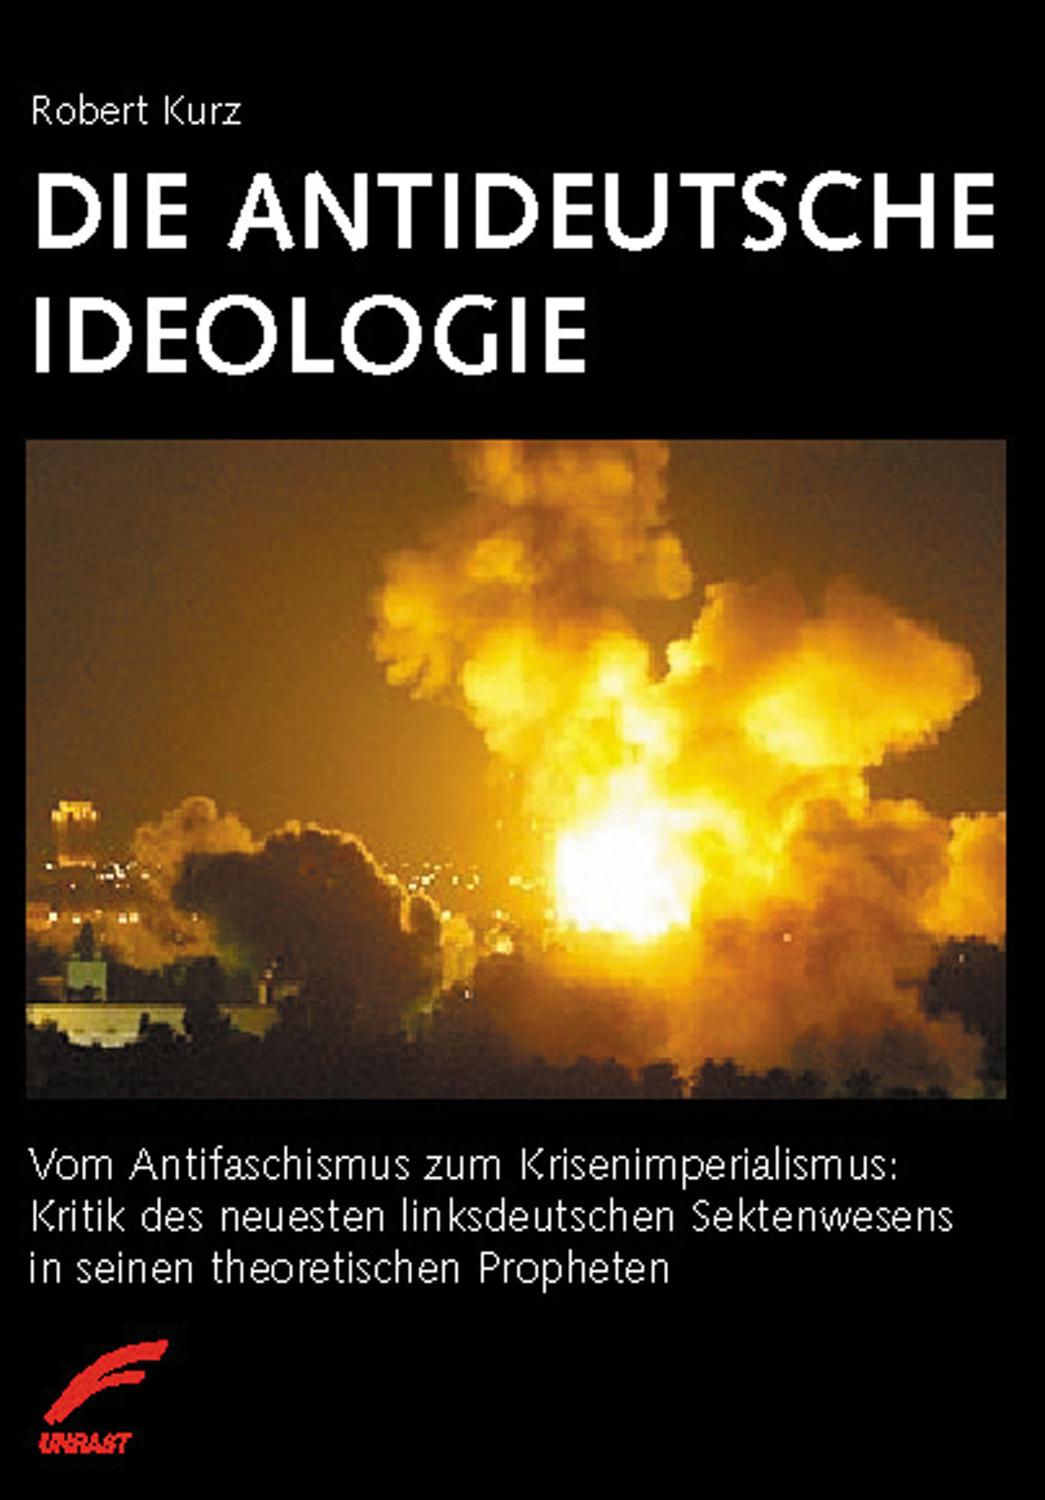 Die antideutsche Ideologie Vom Antifaschismus zum Krisenimperialismus: Kritik des neuesten linksdeutschen Sektenwesens in seinen theoretischen Propheten